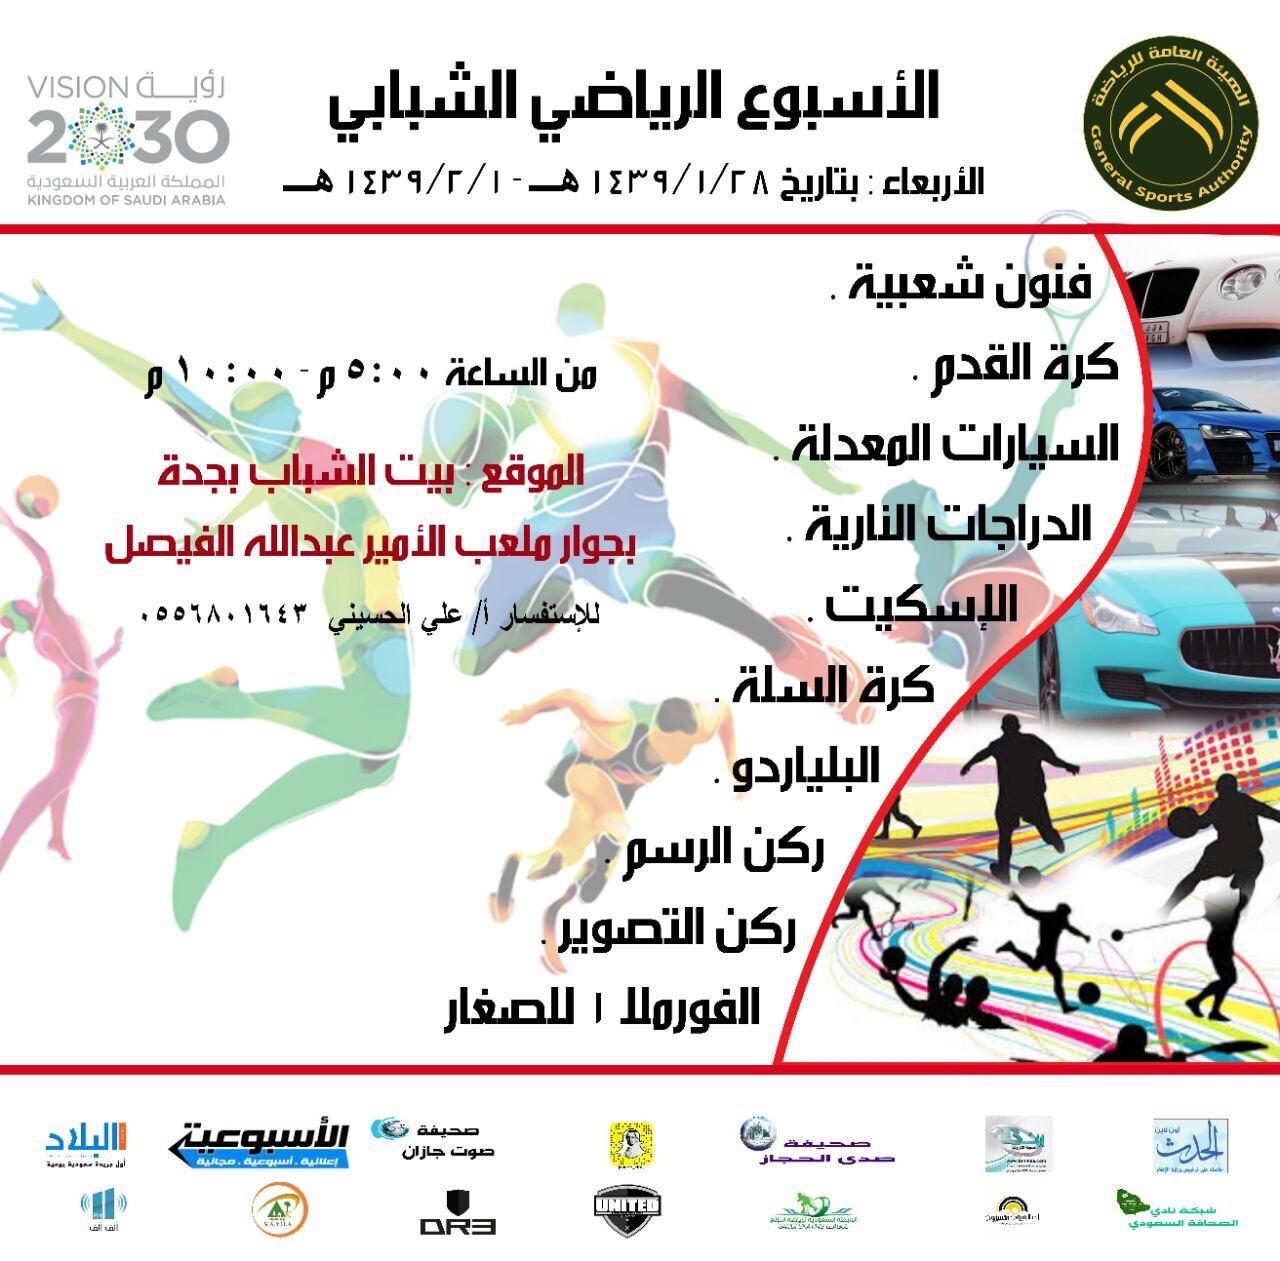 انطلاق برنامج الأسبوع الرياضي الشبابي برعاية شبكة نادي الصحافة السعودي 